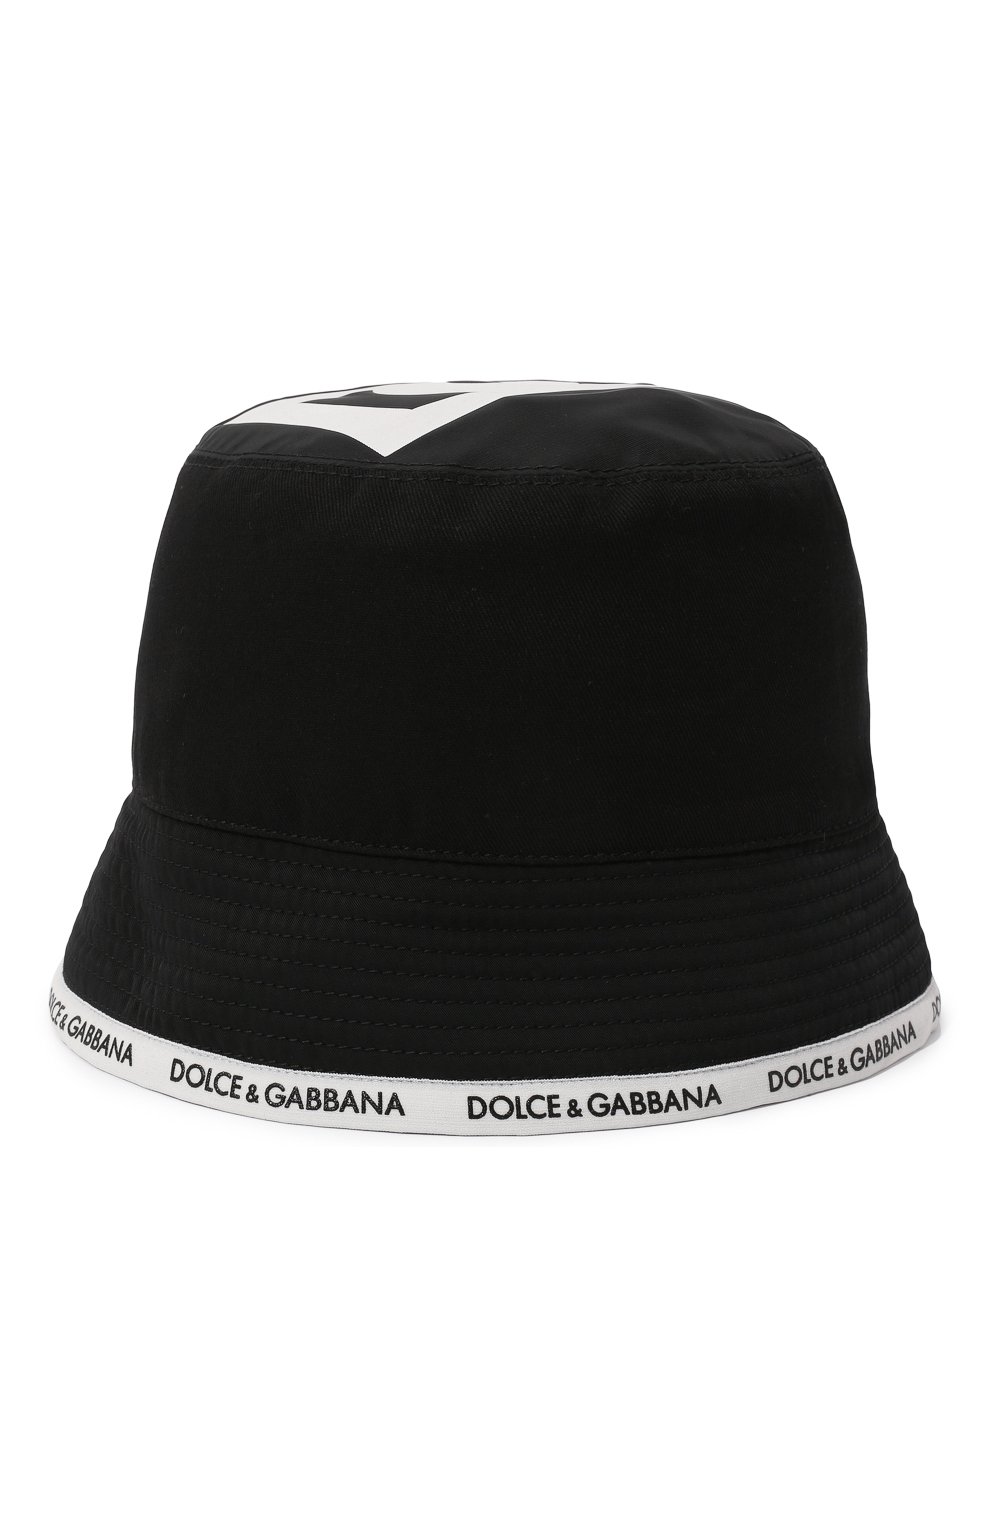 Мужская панама DOLCE & GABBANA черного цвета, арт. GH738A/GEX38 | Фото 1 (Материал: Текстиль, Синтетический материал, Хлопок)